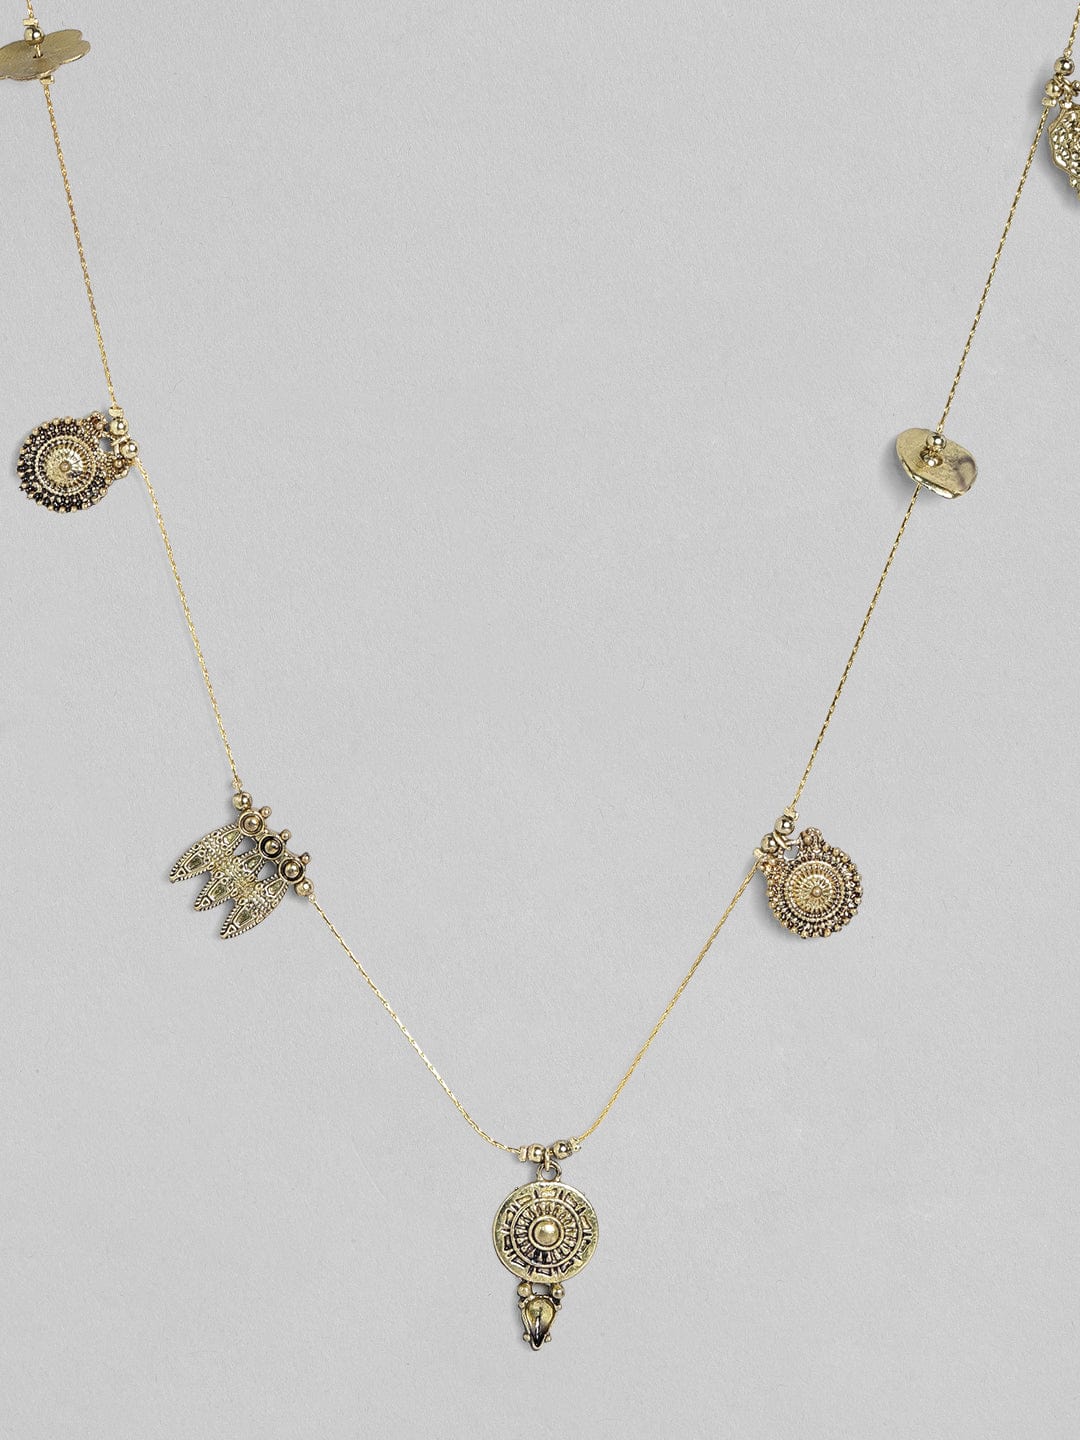 Rubans Voguish Antique Polished Charm Necklace. Chain & Necklaces